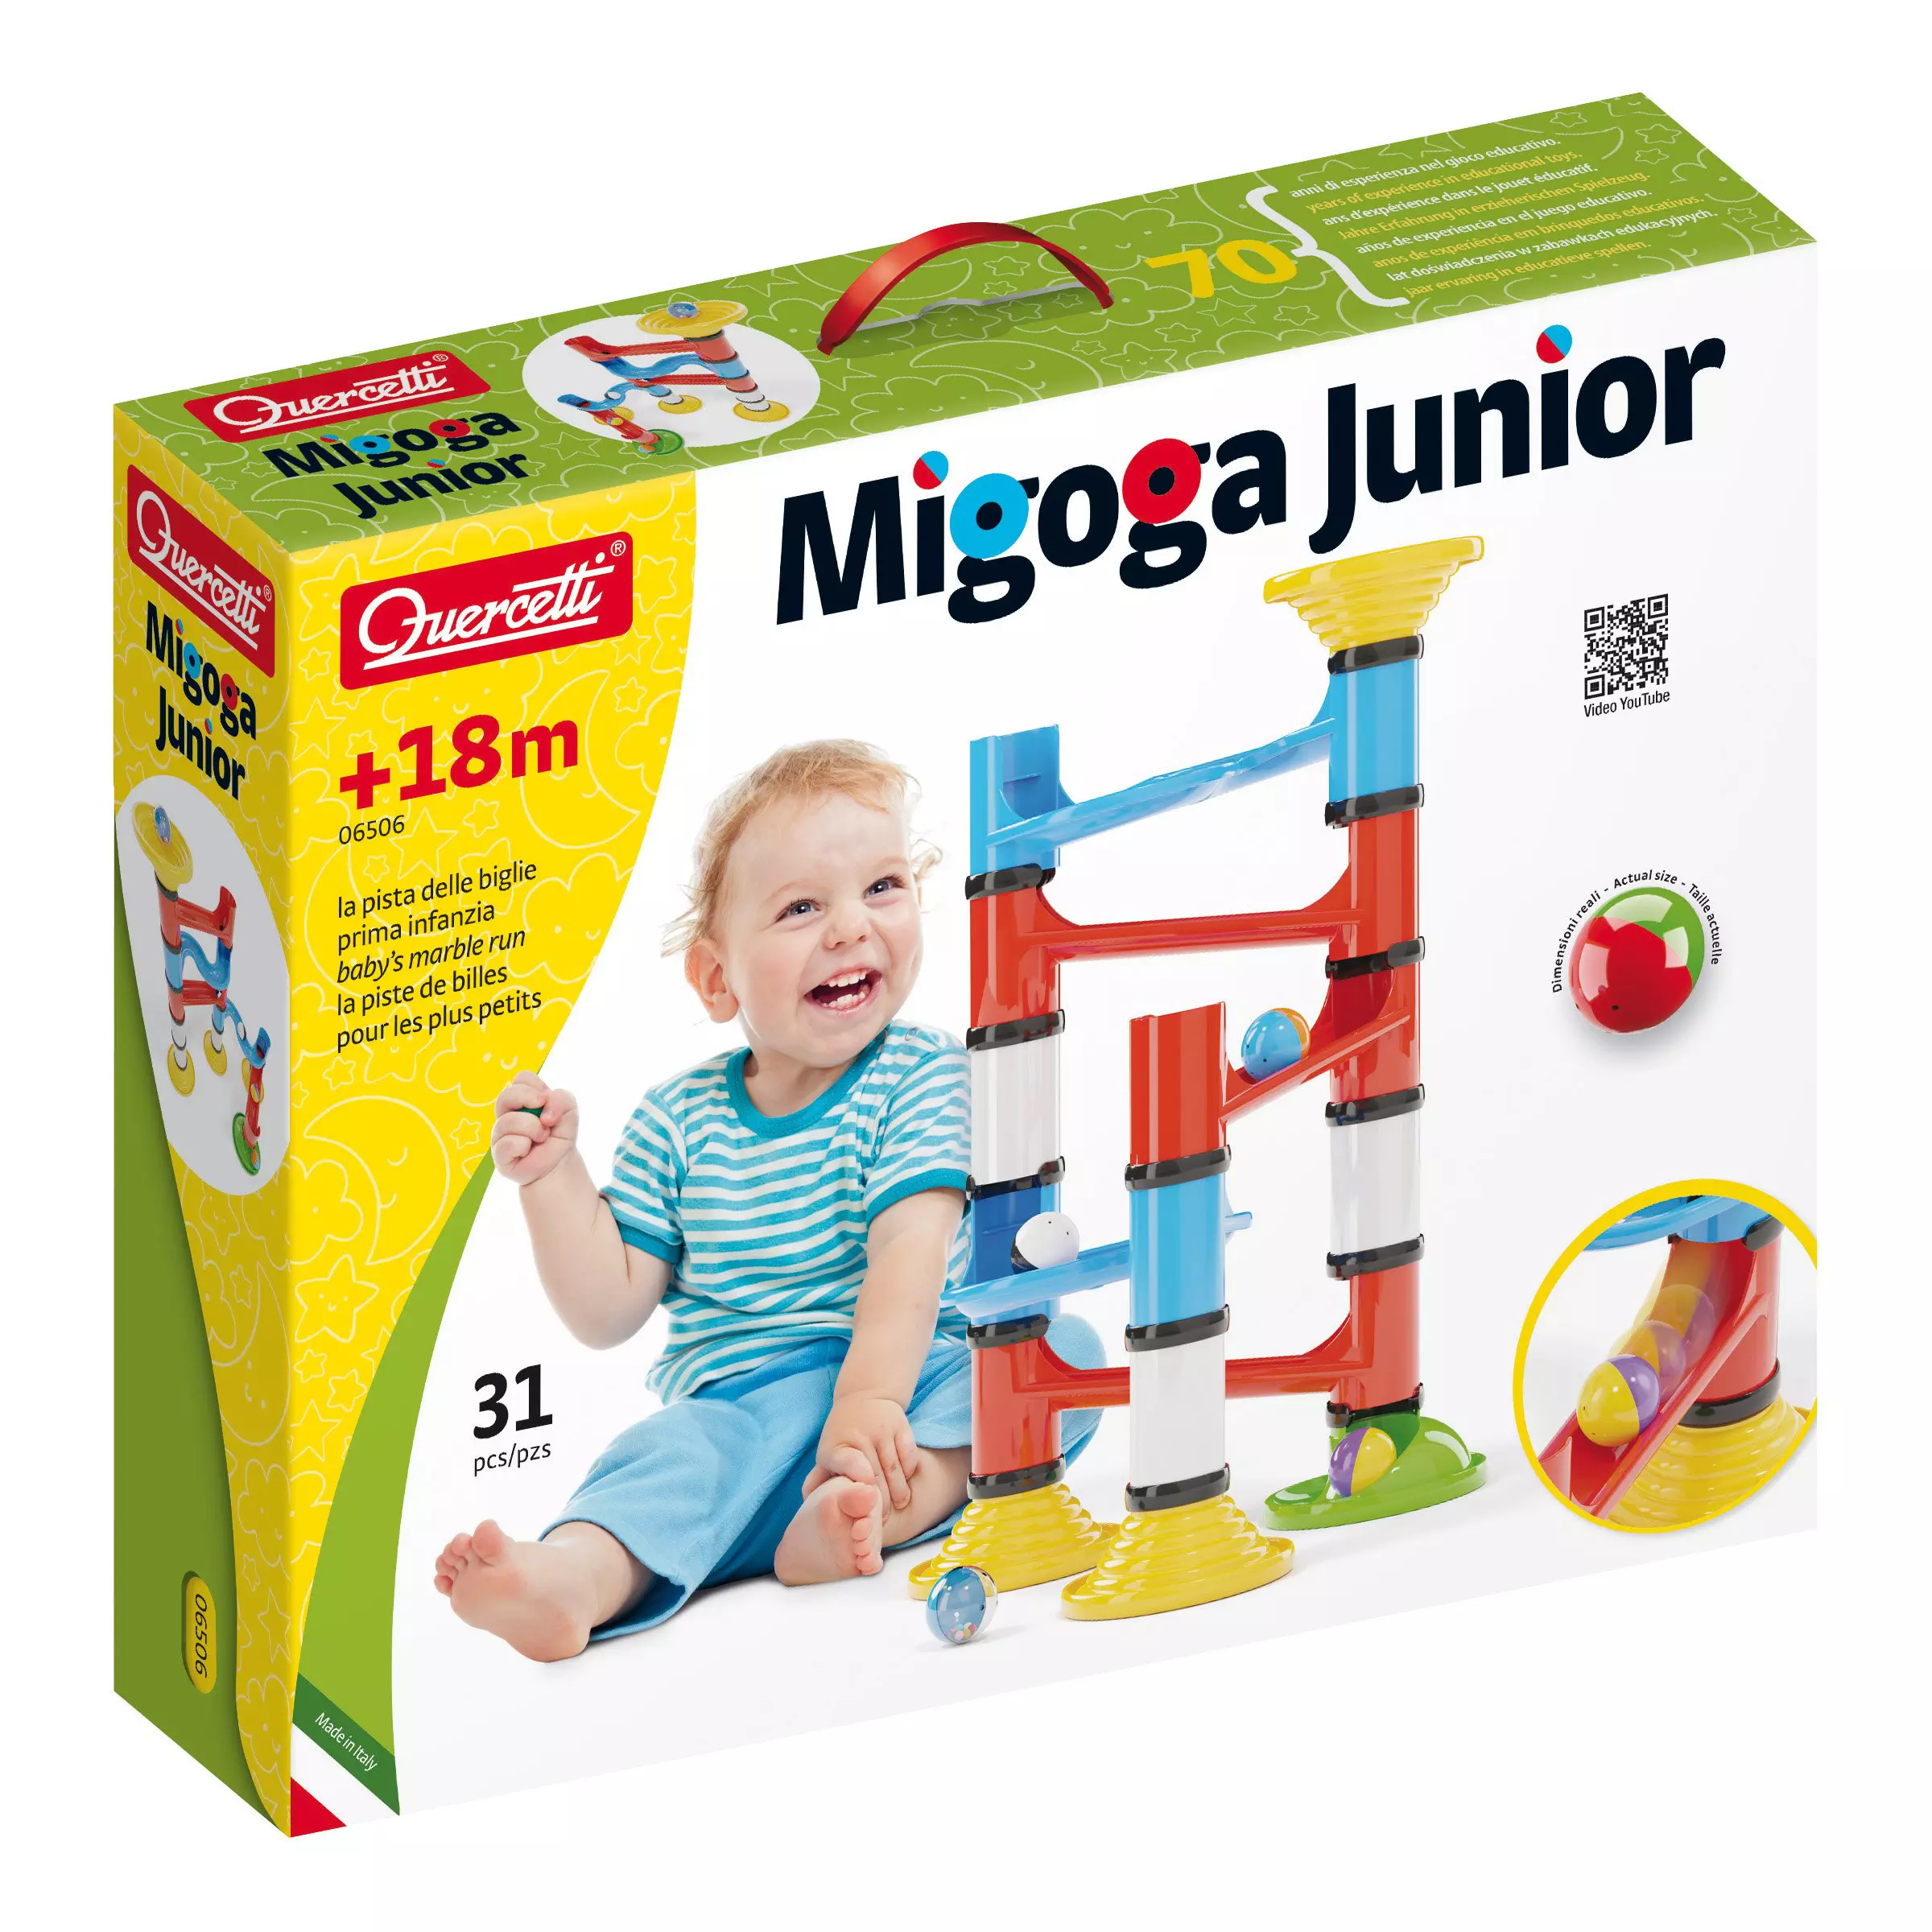 Quercetti Migoga Junior Pcs Qu-6506